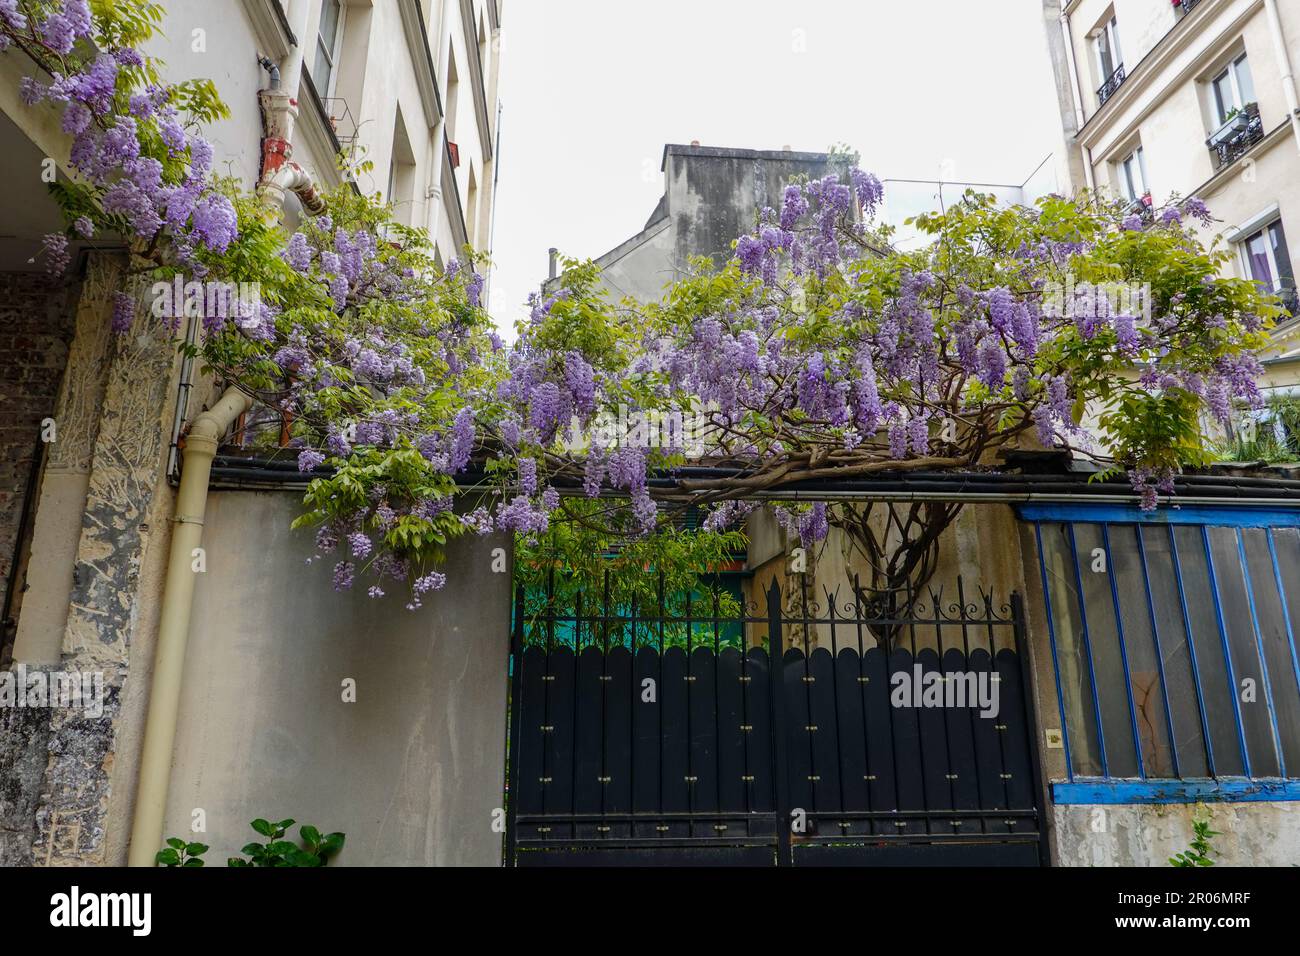 Plantas exuberantes, La Cité du Figuier, calle escondida en el distrito 11th, conocido como el lugar donde los trabajadores del metal tenían tiendas durante el siglo 19th, París. Foto de stock